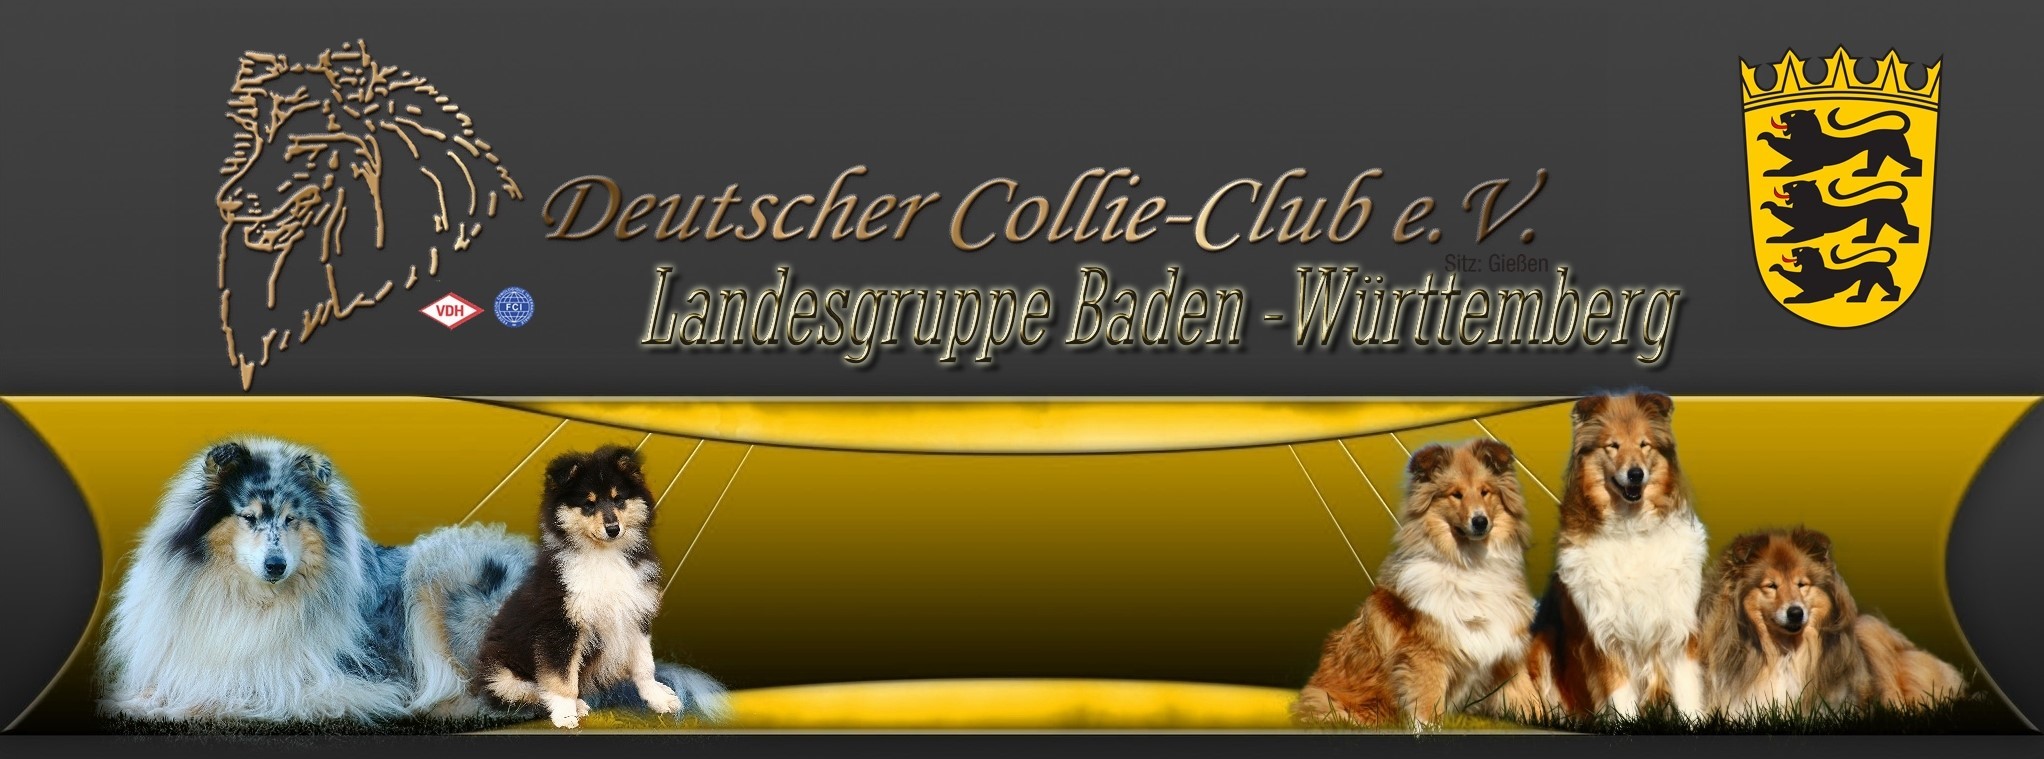 Deutscher Collie-Club e. V.